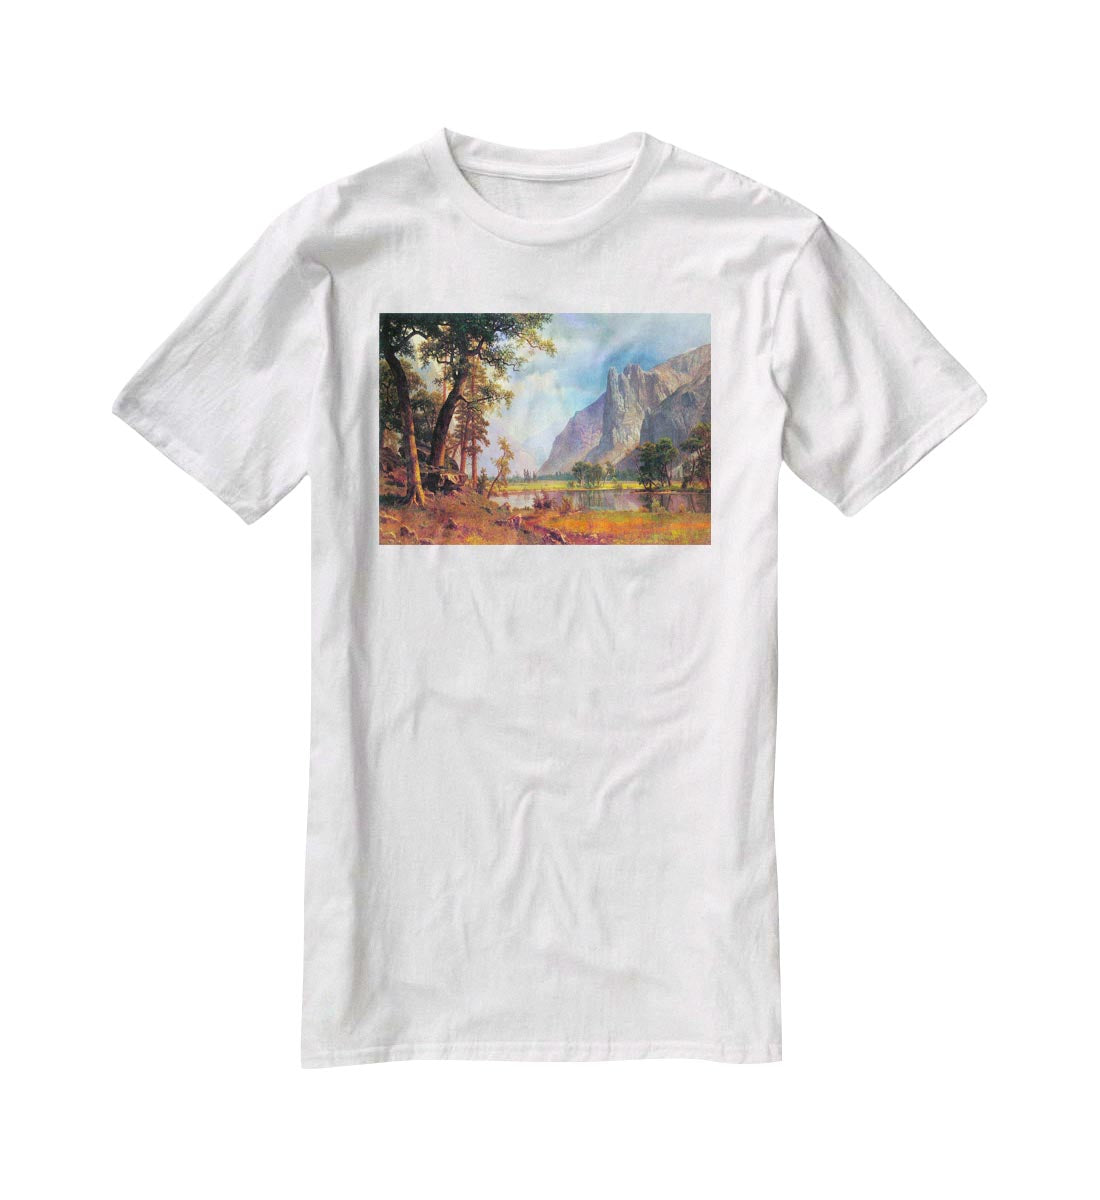 Yosemite Valley 2 by Bierstadt T-Shirt - Canvas Art Rocks - 5